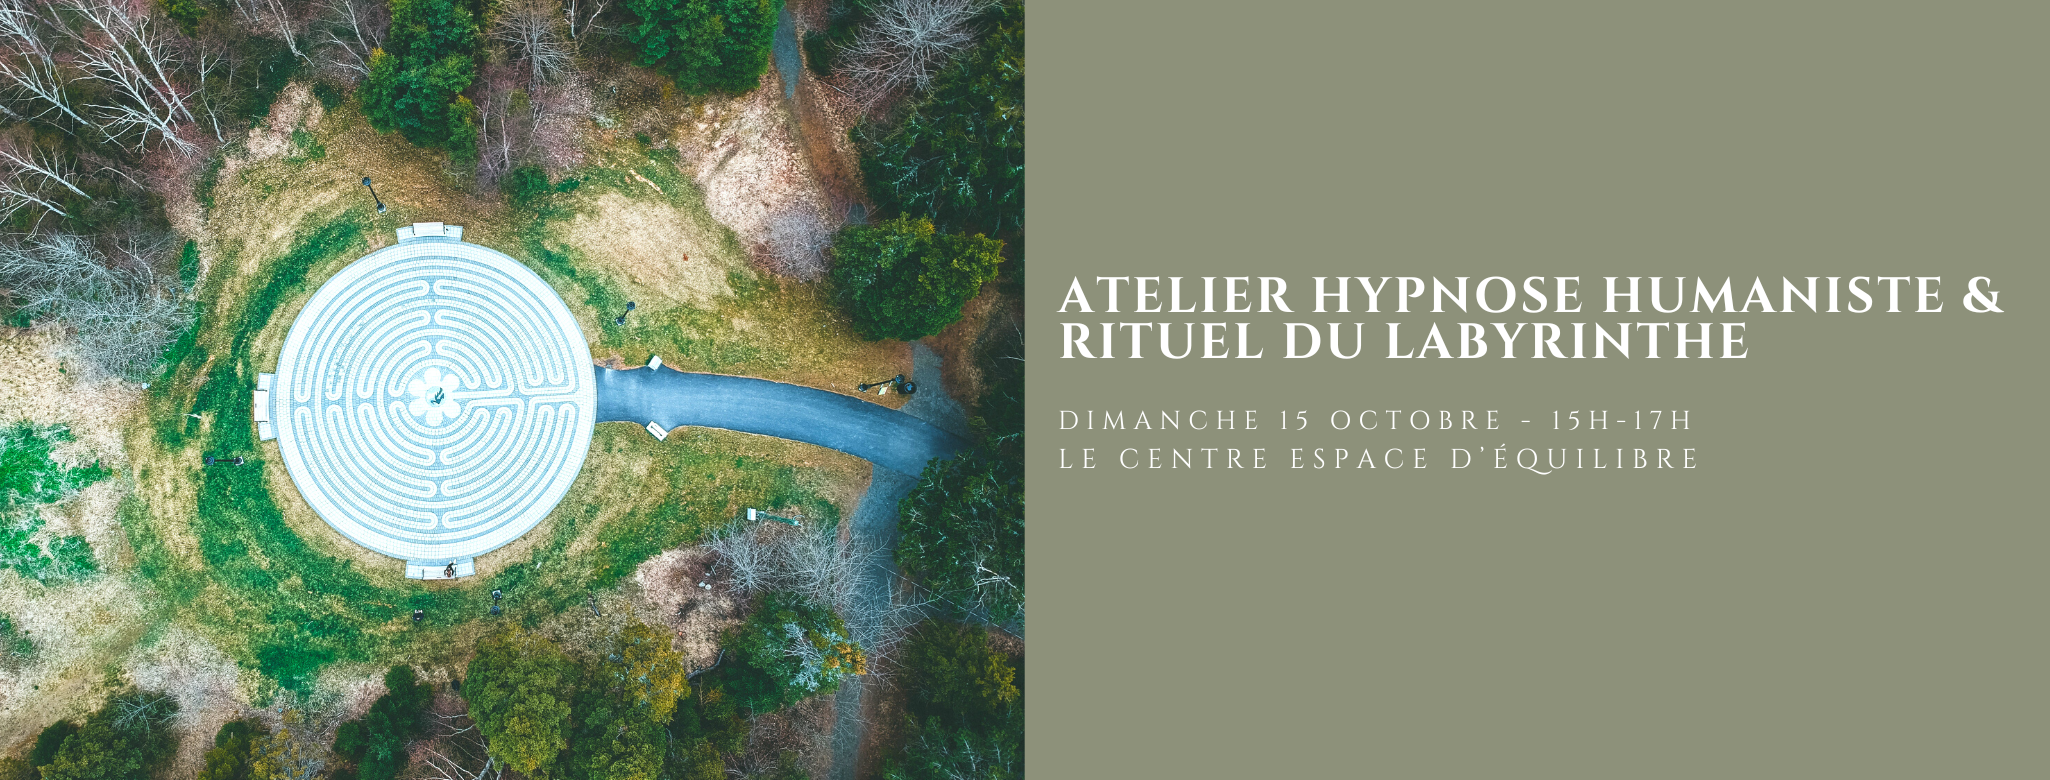 Atelier Hypnose Humaniste et Rituel du Labyrinthe - Le Centre Espace Equilibre Rouen - Sabrina Debris